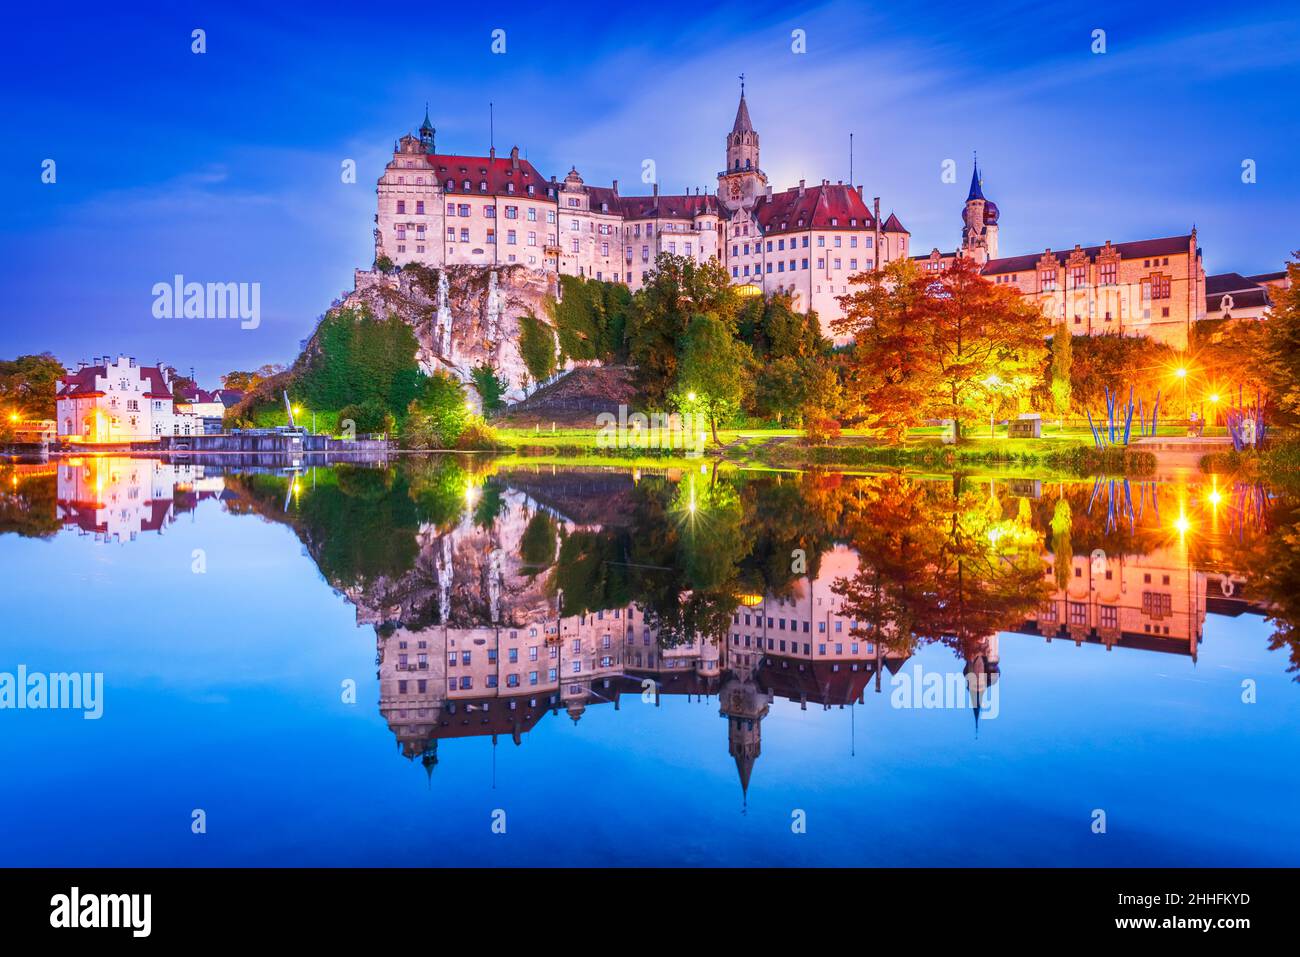 Sigmaringen, Germania. Baden-Wurttemberg e il Castello reale di Sigmaringen sulla roccia sulle rive del Danubio. Foto Stock